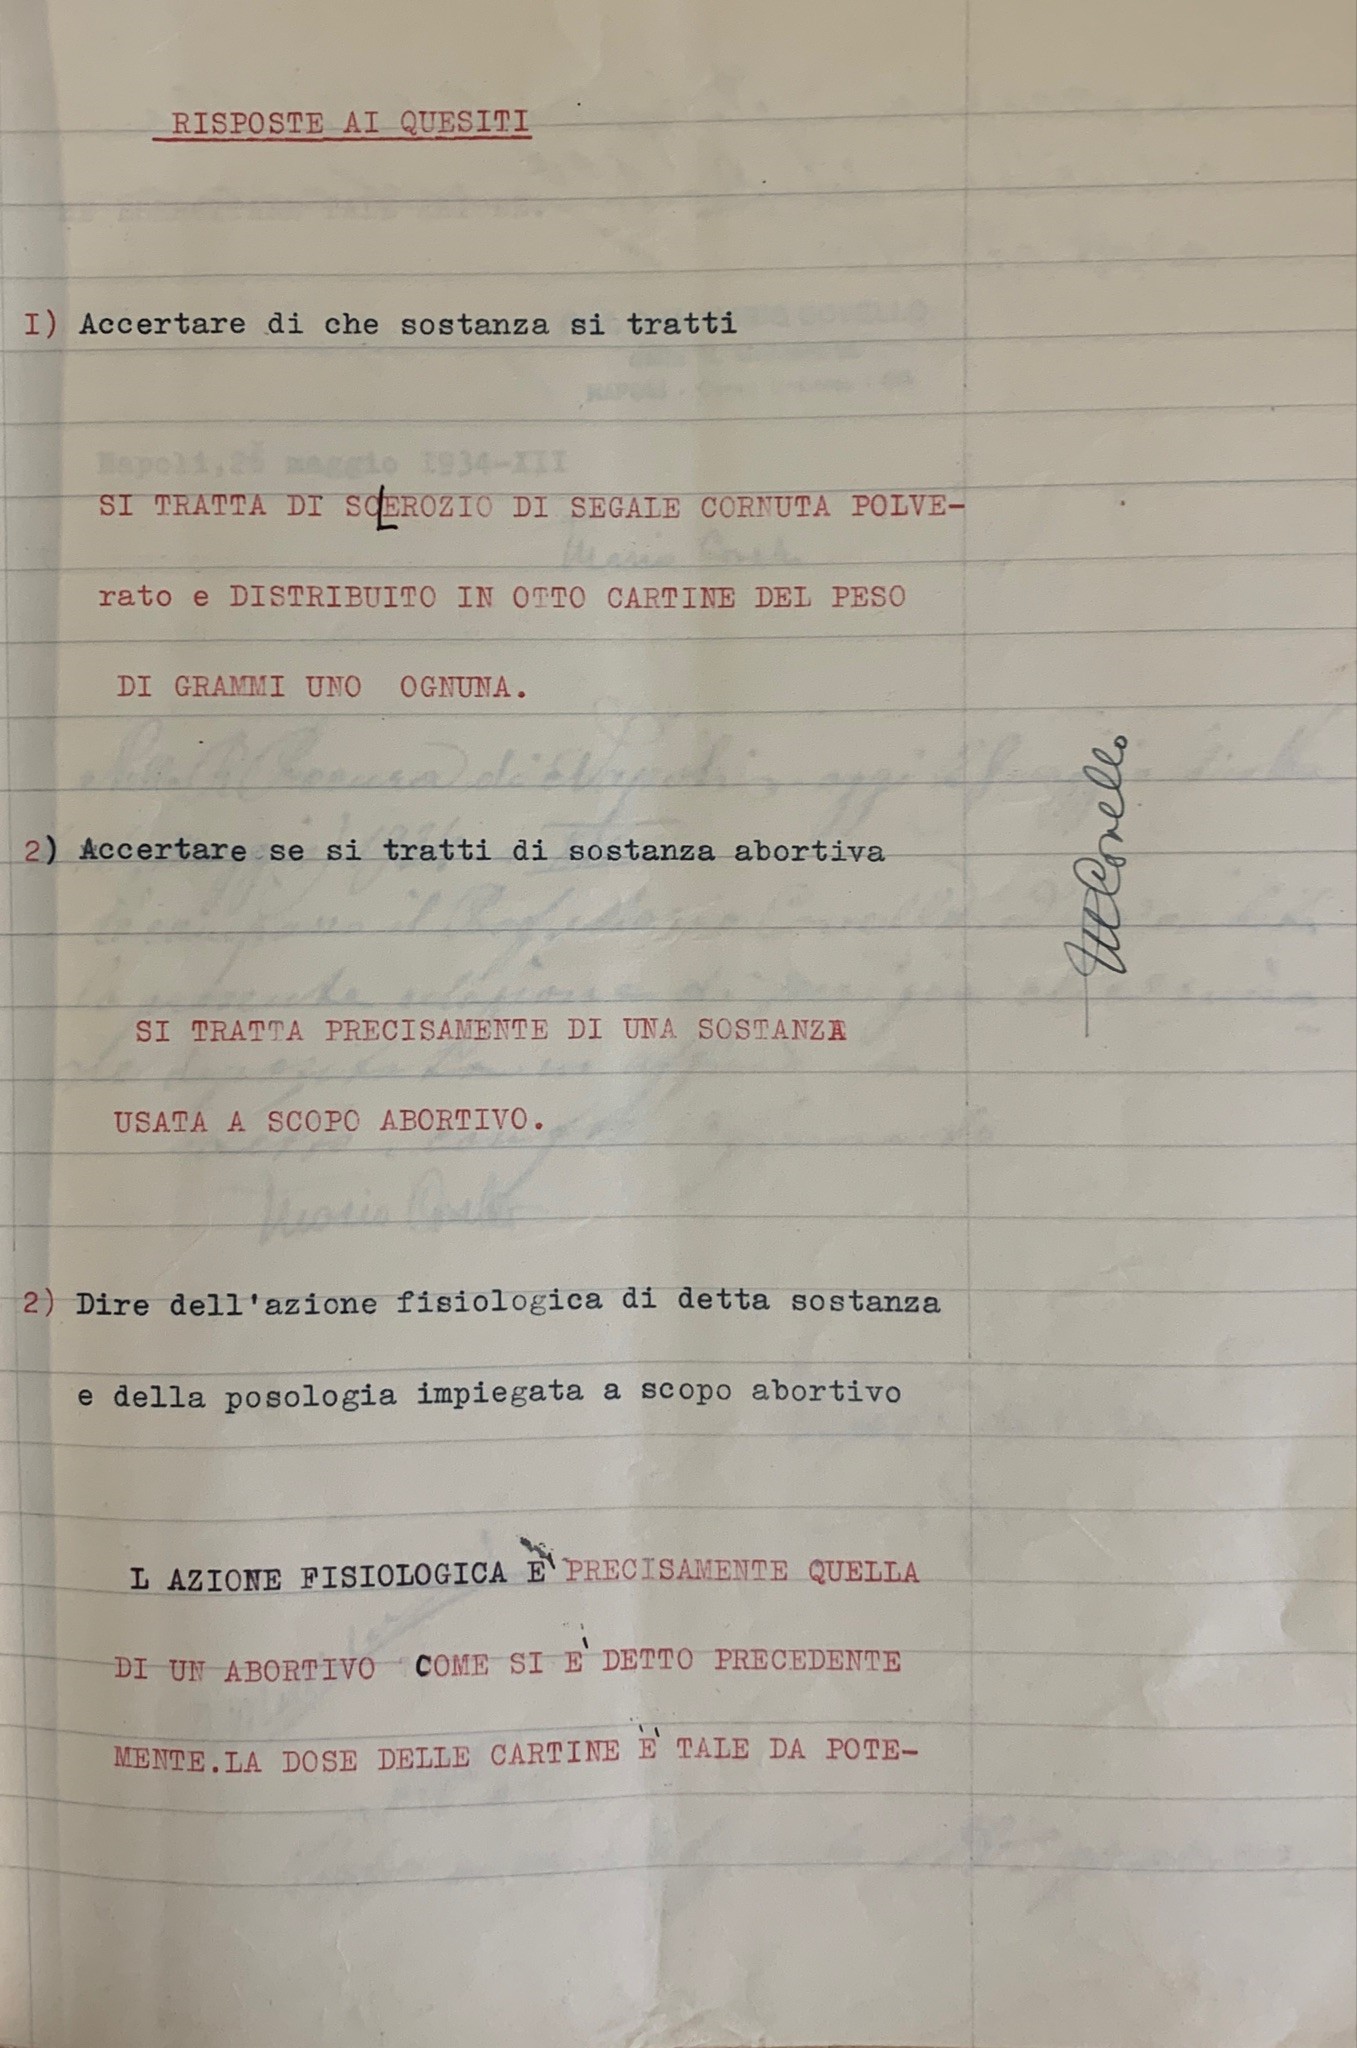 Relazione di perizia chimico-tossicologica nel processo contro Giovanna Campese. Napoli, 1934